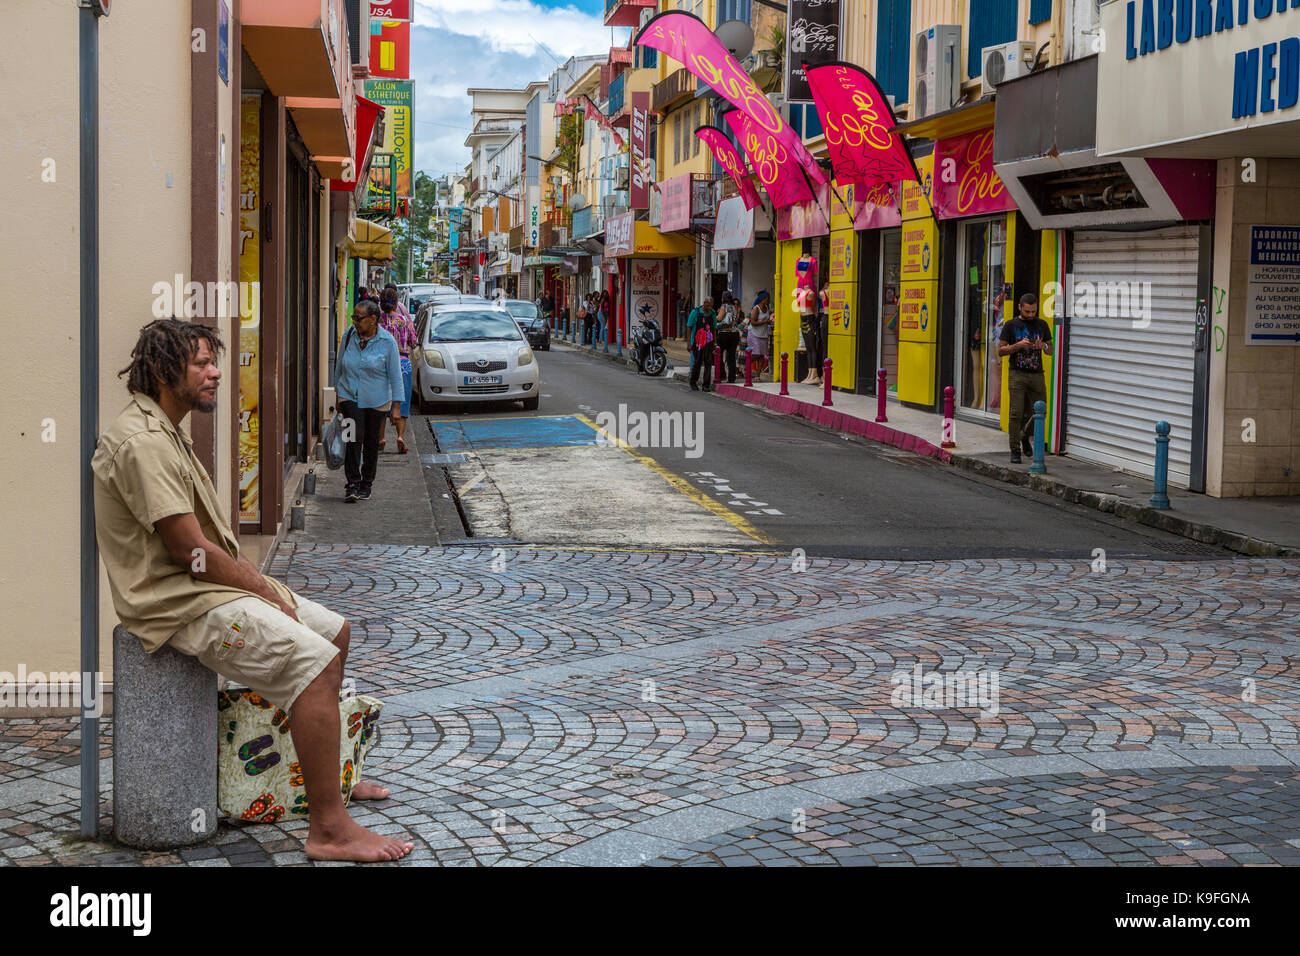 Fort-de-France, Martinique. Street Scene, Läden, Geschäfte, Menschen. Stockfoto